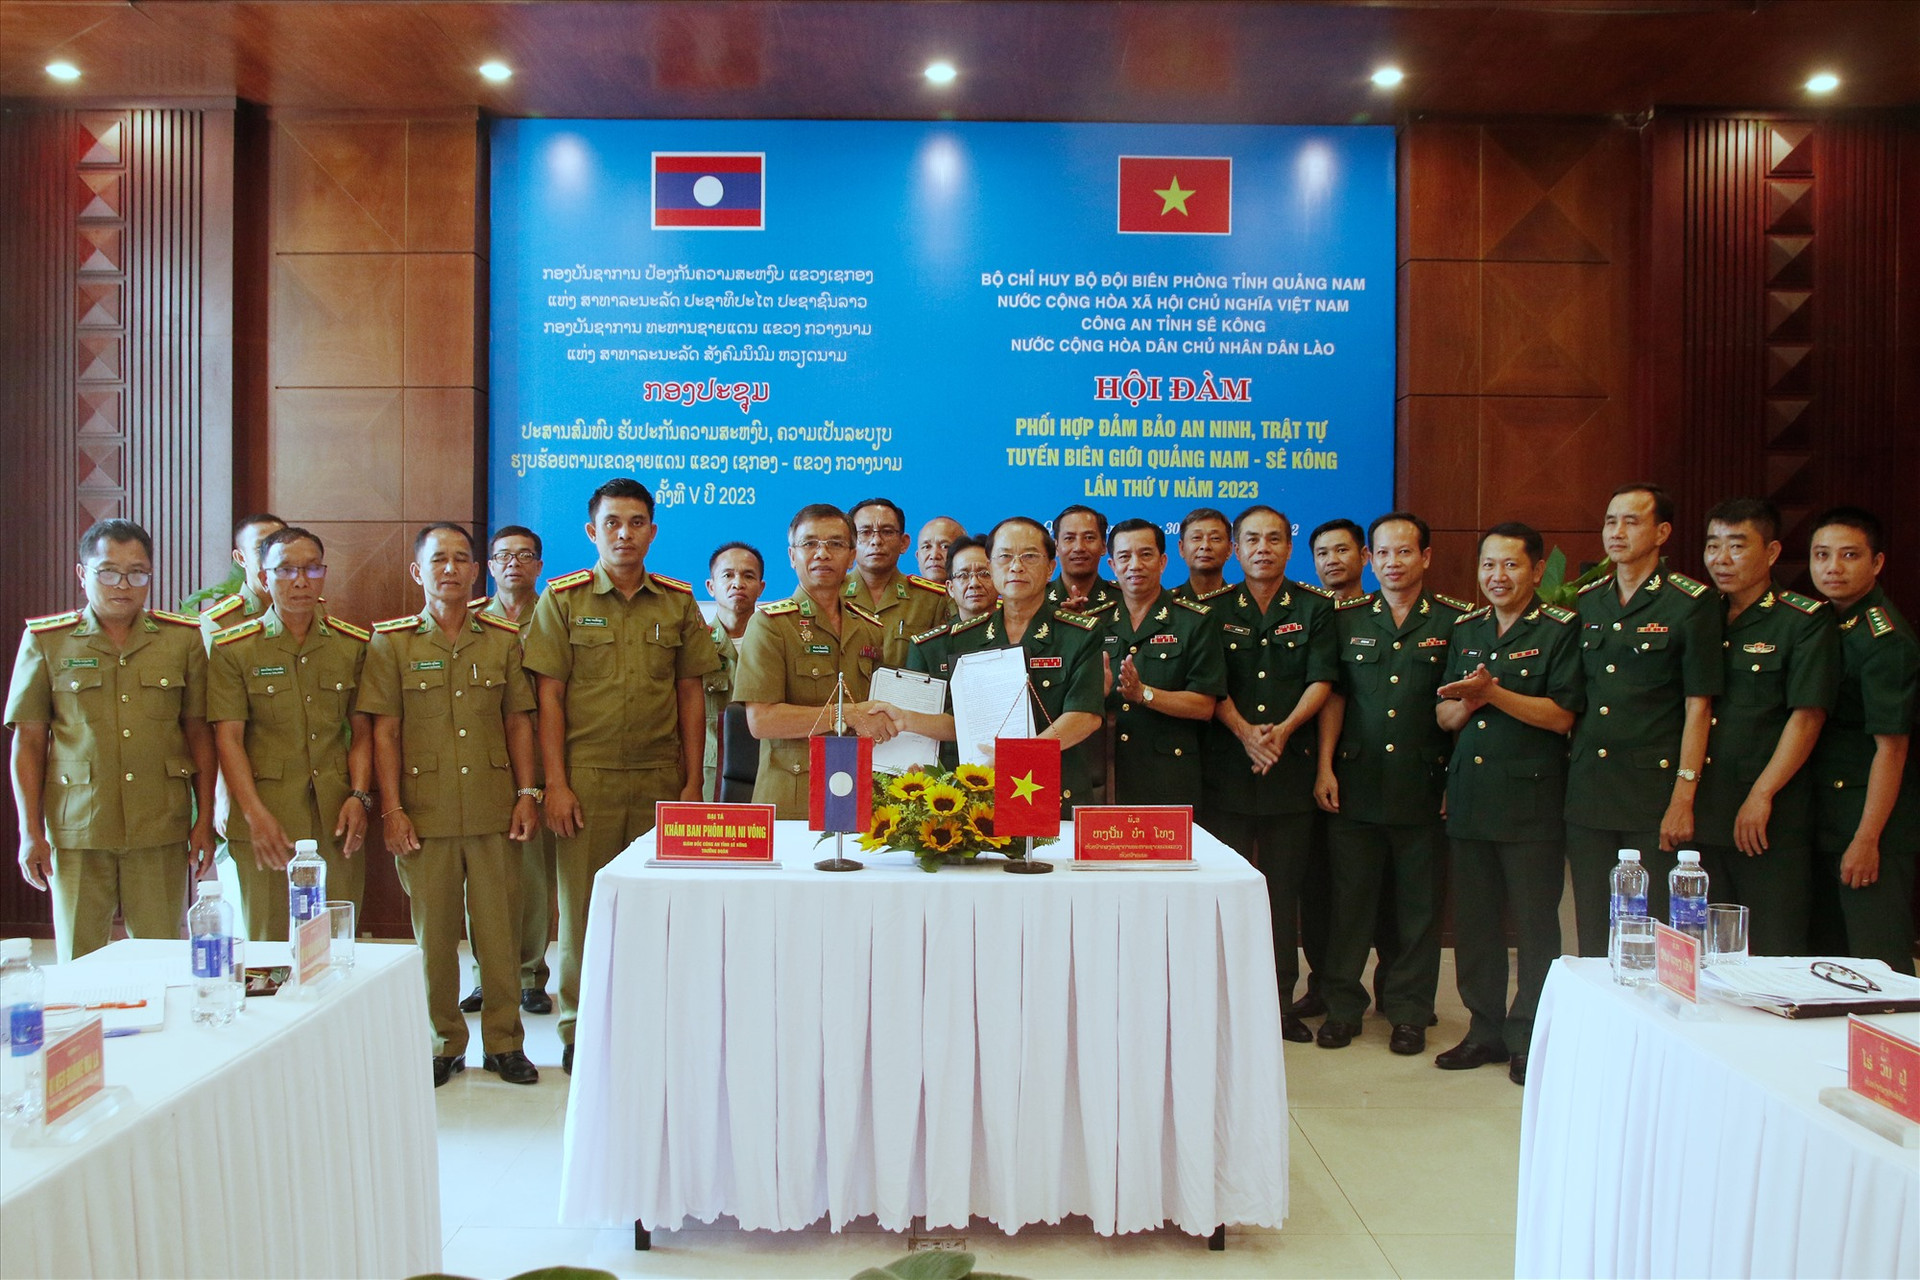 Bộ chỉ huy BĐBP tỉnh Quảng Nam và Công an tỉnh Sê Kông ký kết biên bản thỏa thuận. Ảnh: HUỲNH CHÍN